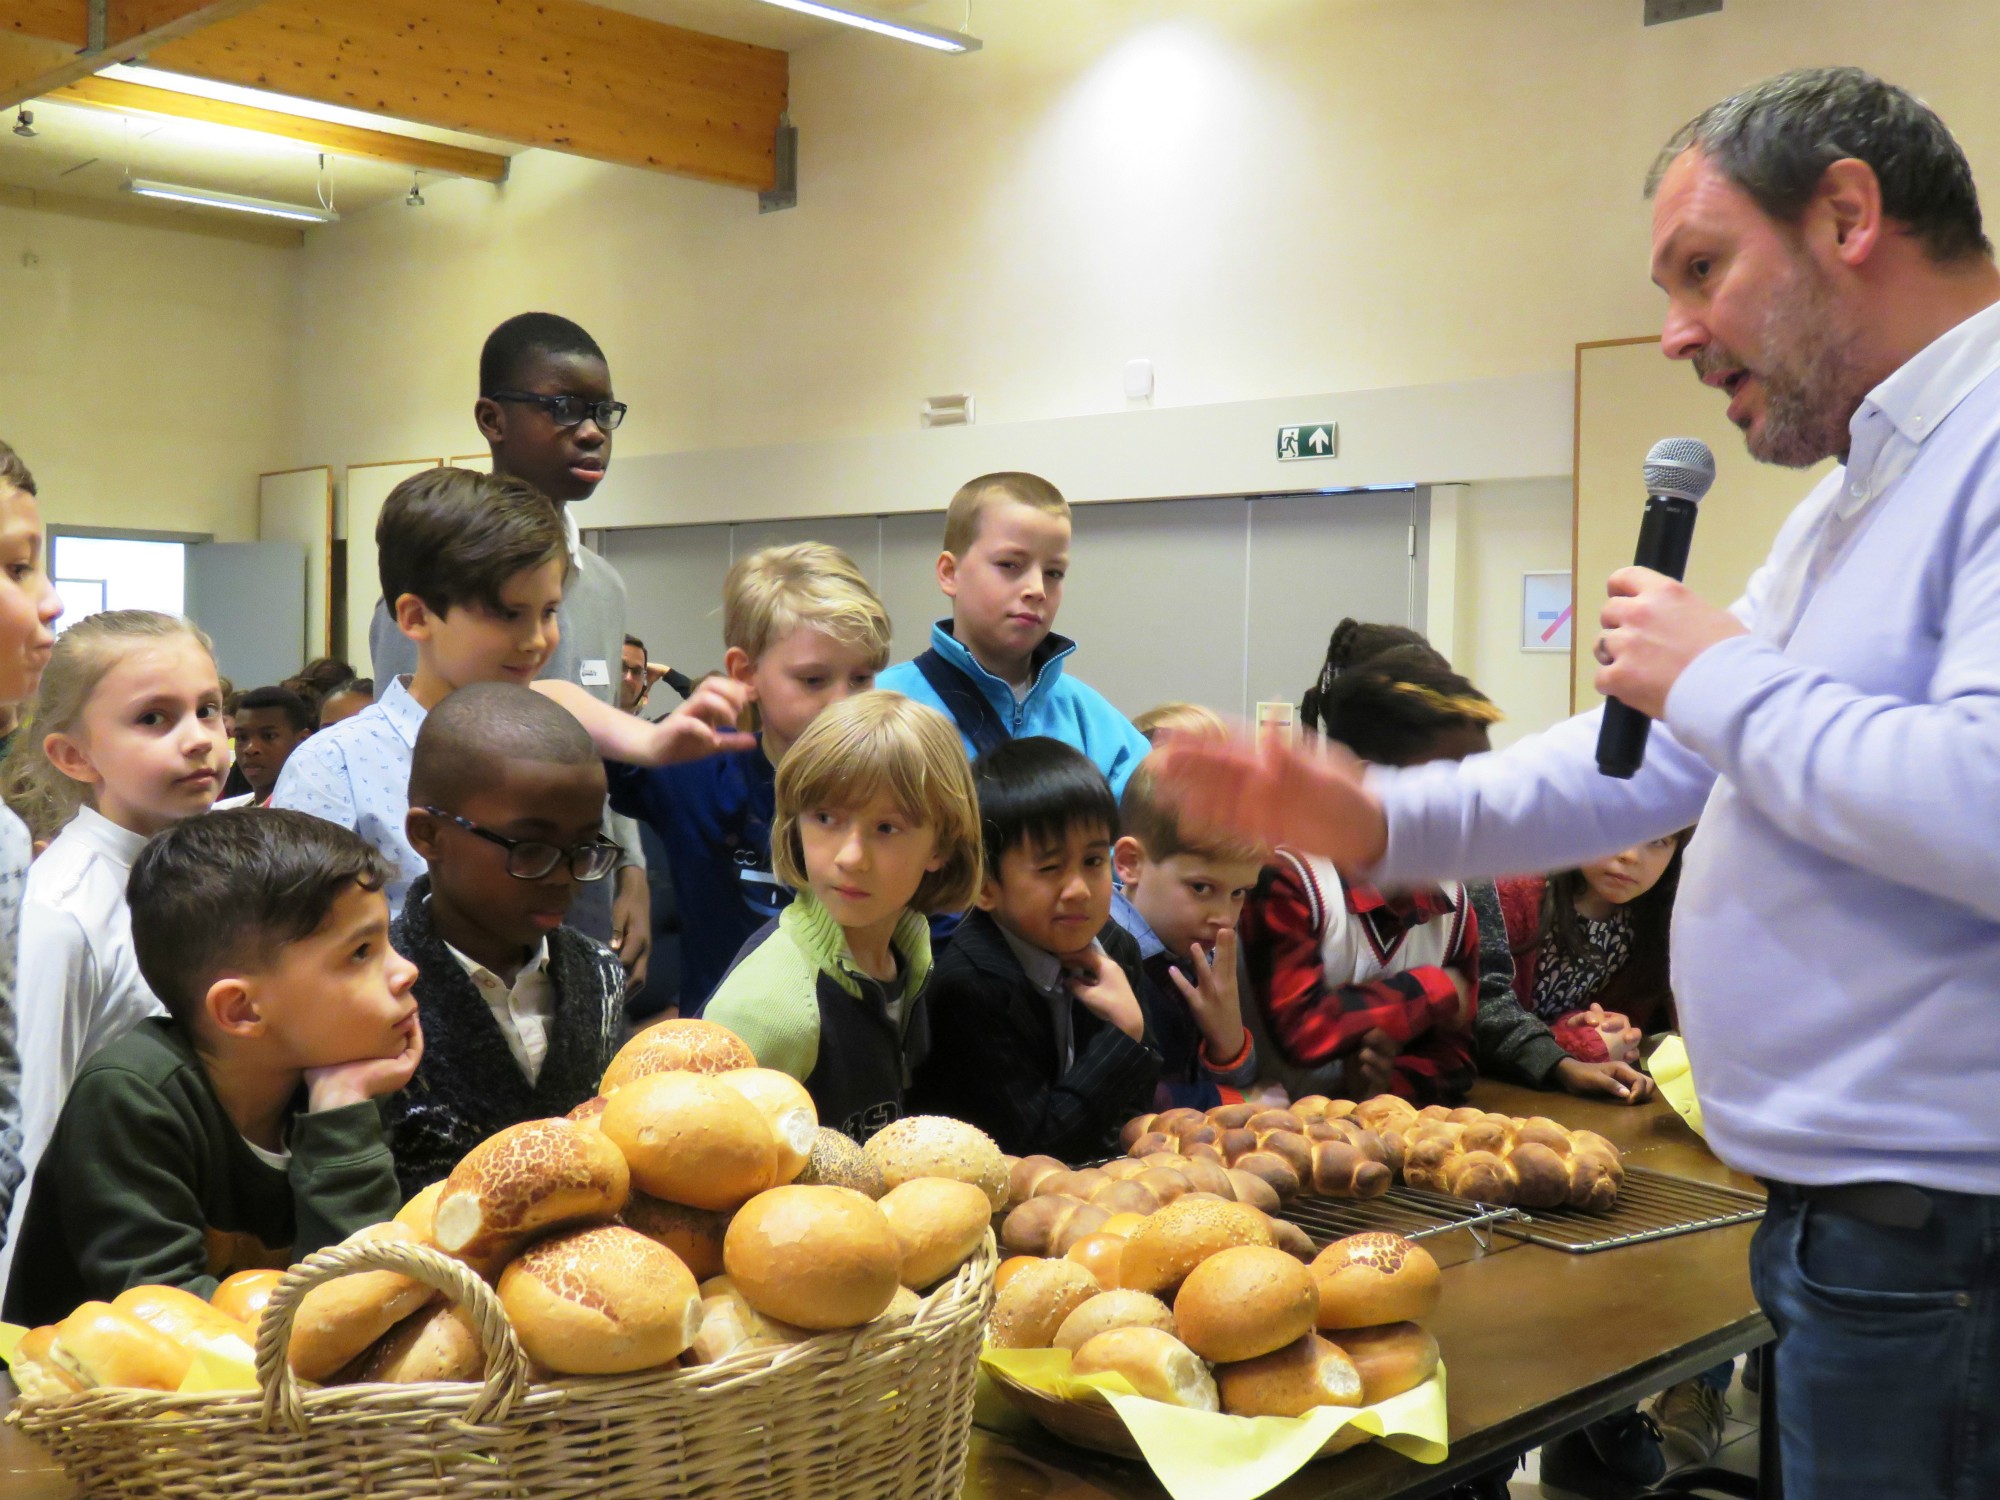 Herman zegent het brood alvorens aan tafel te gaan